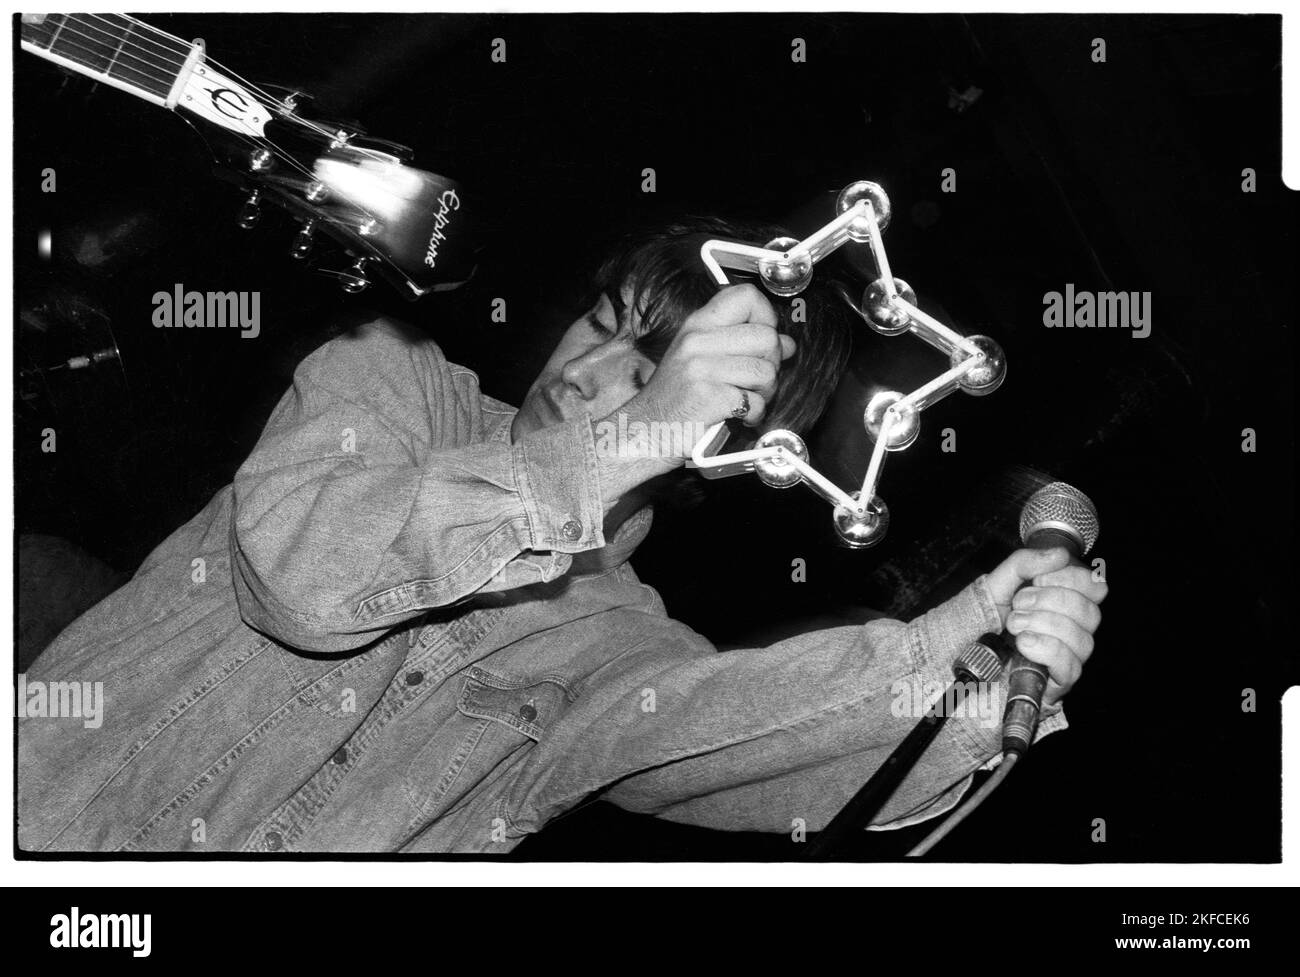 OASIS, PRIMO TOUR NAZIONALE, 1994: Liam Gallagher degli Oasis at the Fleece and Firkin a Bristol, Inghilterra, marzo 30 1994. In questo primo concerto la leggendaria band suonò come supporto ad un altro gruppo indie emergente chiamato Whiteout. Fotografia: Rob Watkins Foto Stock